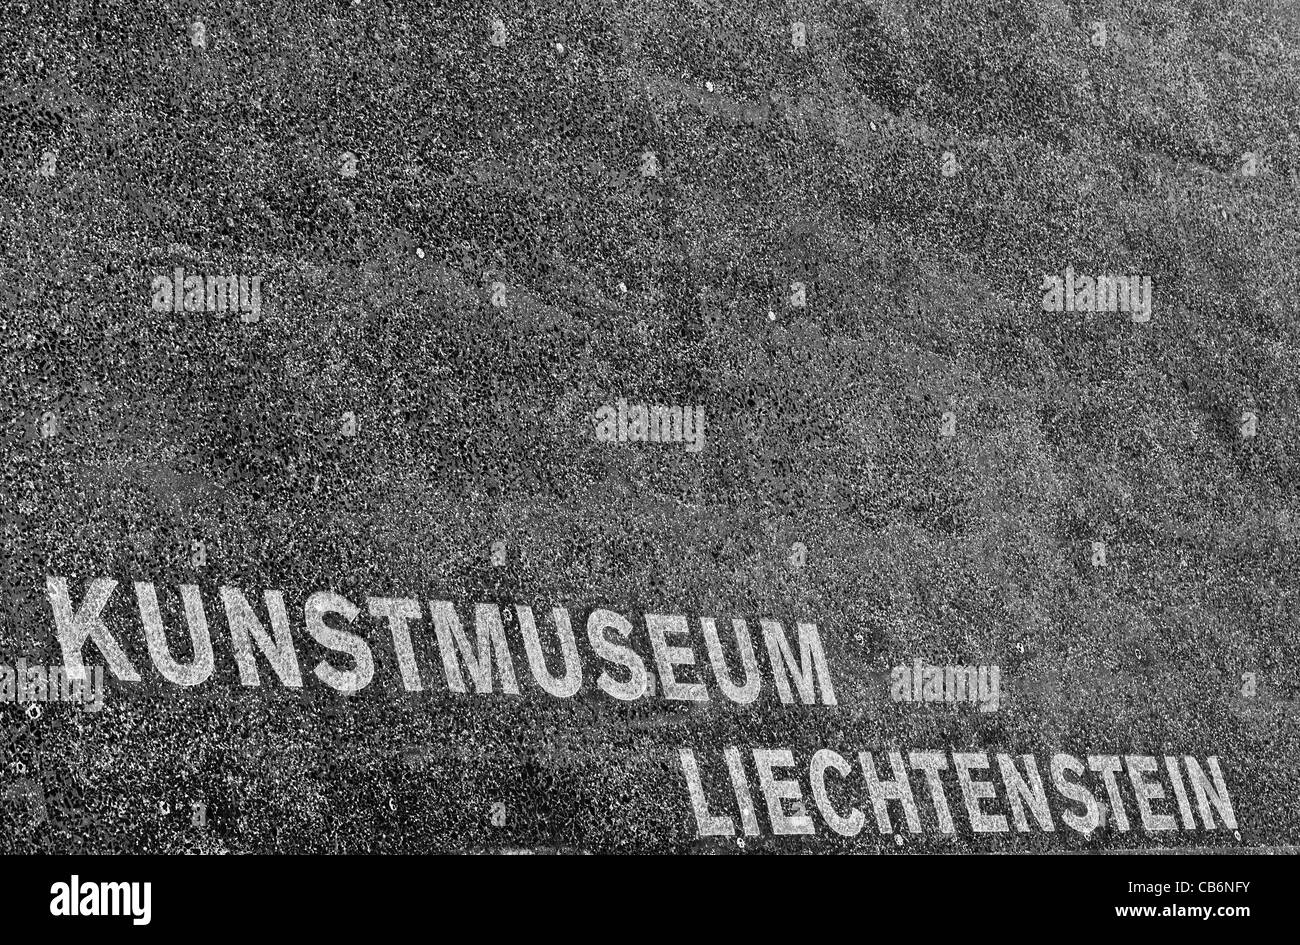 Kunstmuseum Liechtenstein, Vaduz, Liechtenstein Stockfoto